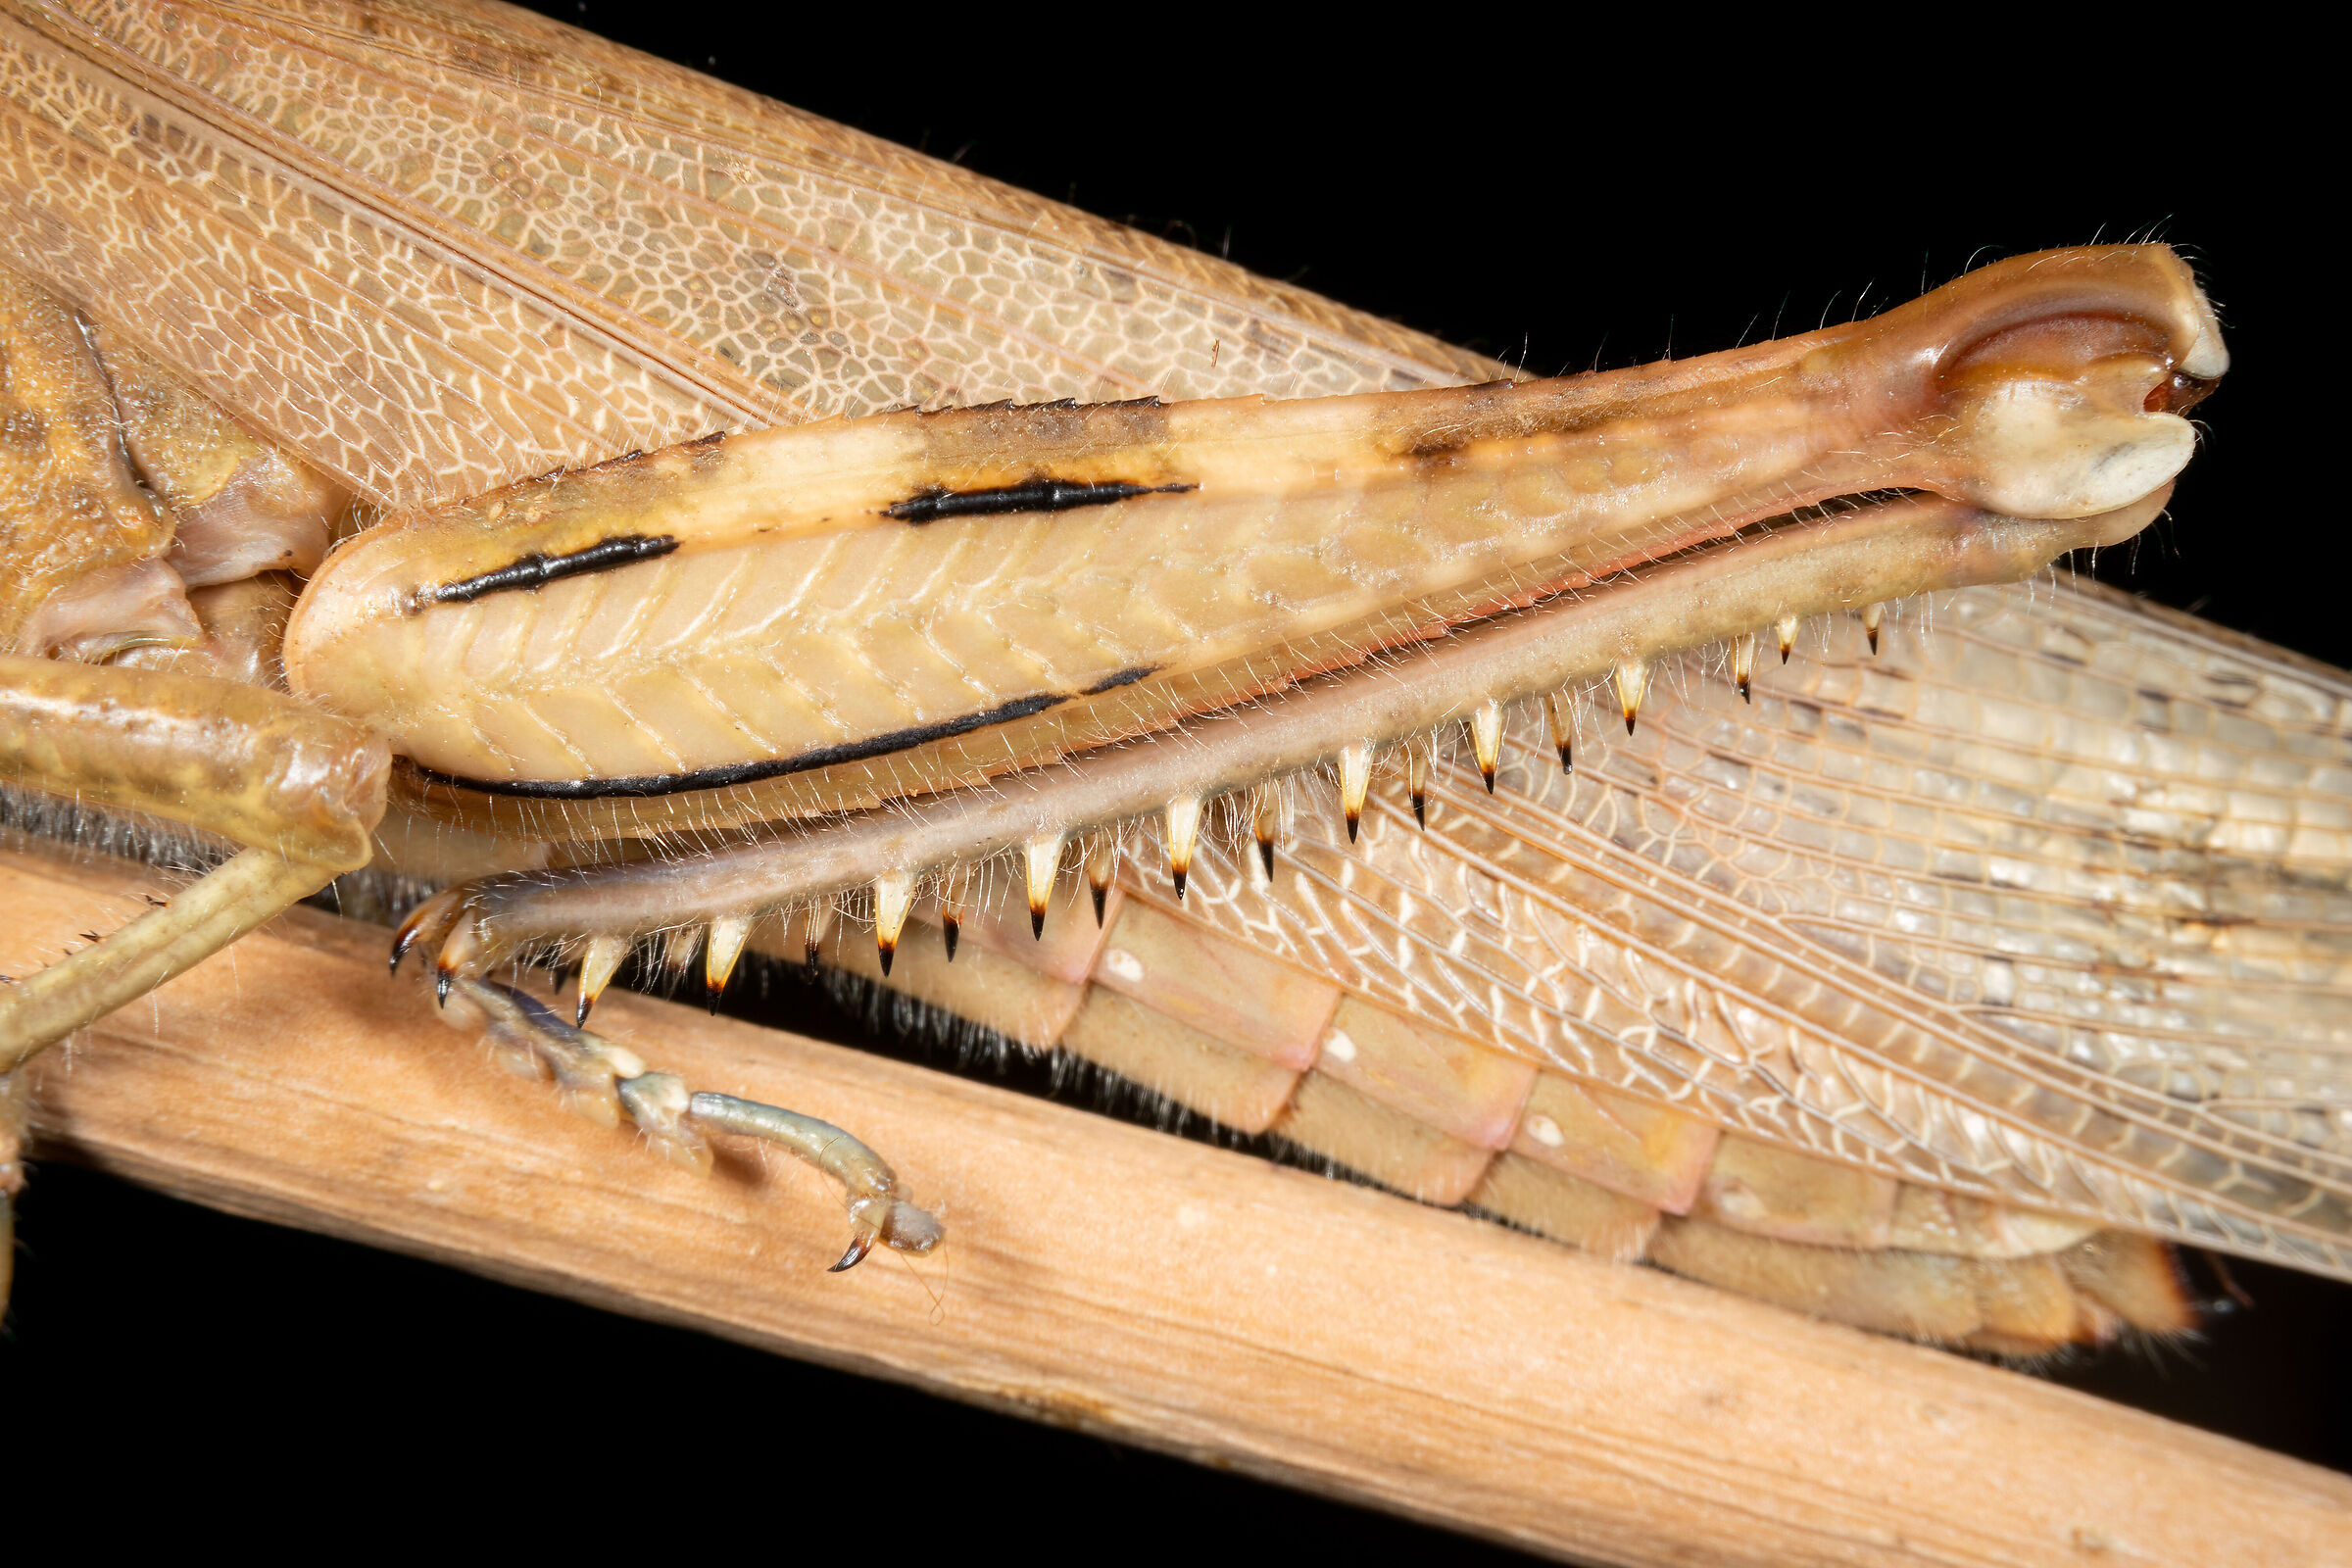 Egyptian locust hind leg...